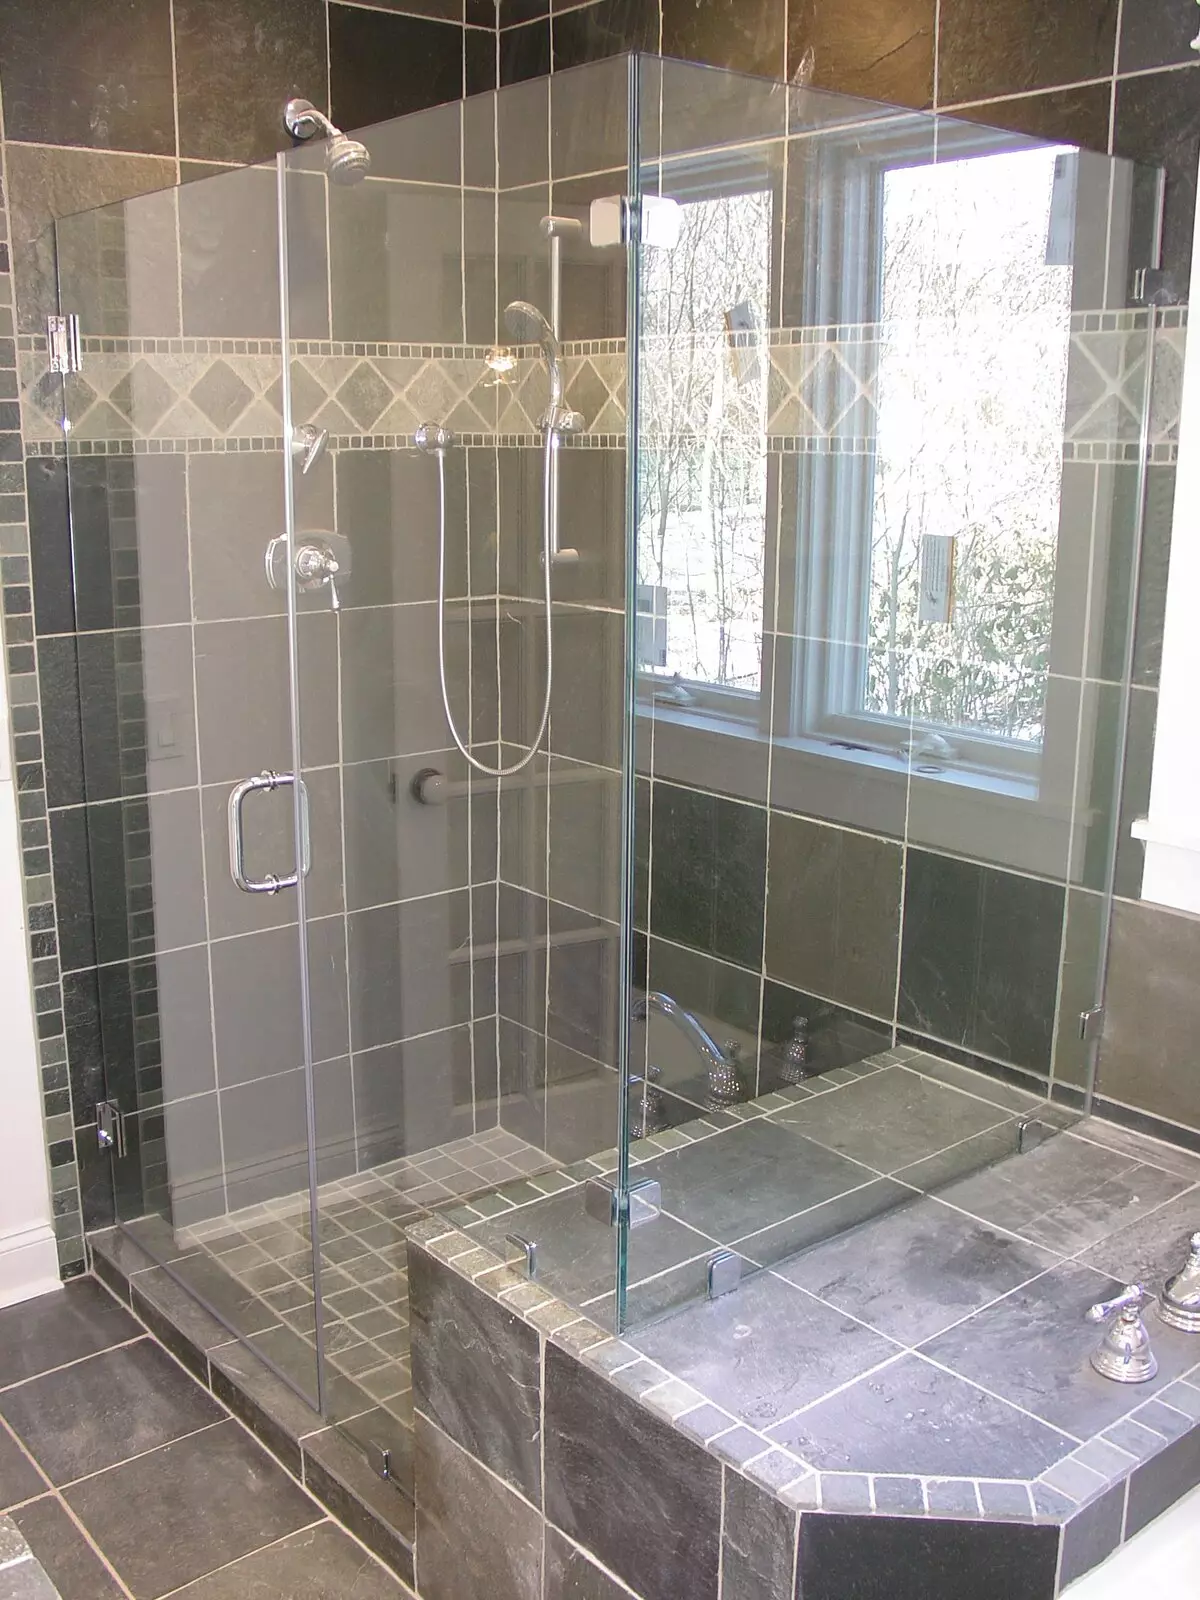 キャビンなしのバスルームのシャワー（86写真）：パレットとタイルキャビン、プロジェクトなしのシャワー付きバスルームデザインオプション 21384_2